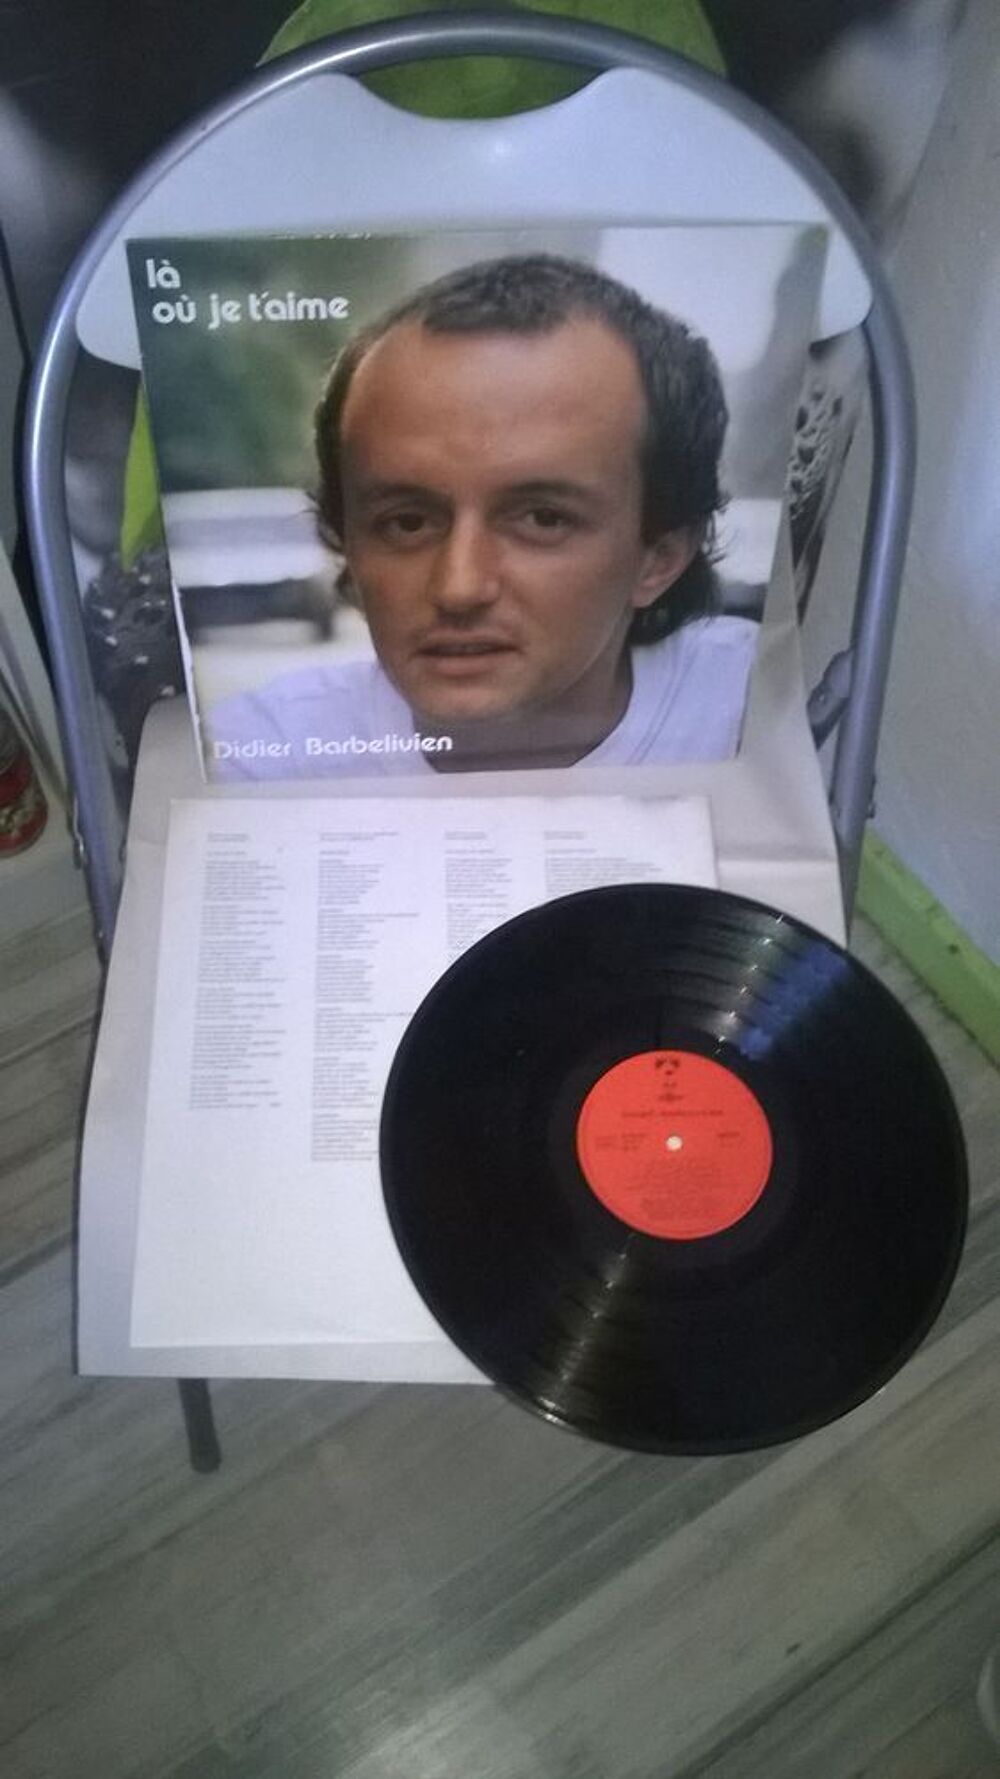 Vinyle Didier Barbelivien
L&agrave; O&ugrave; Je T'aime
1985
Excellent CD et vinyles